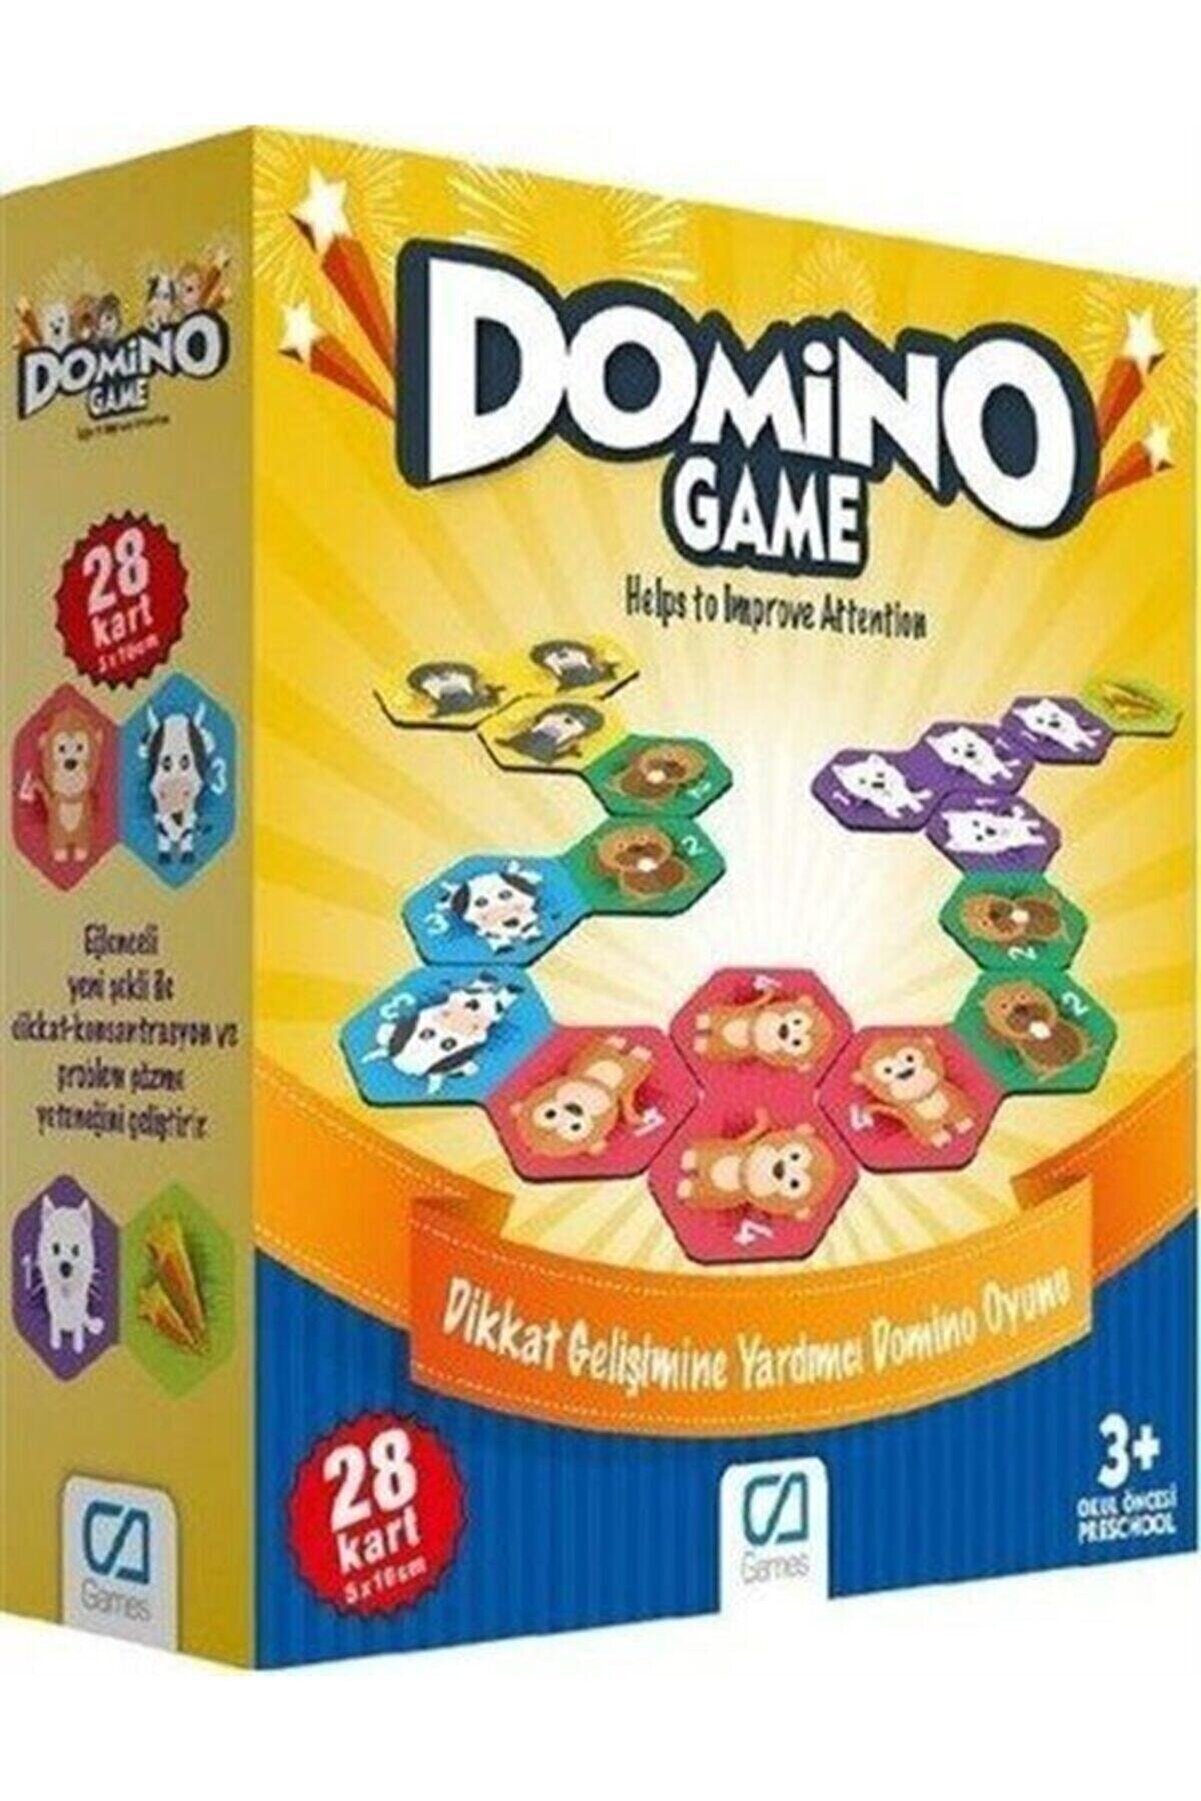 Genel Markalar Domino Game (28 Kart) (ca.10015) & Dikkat Gelişimine Yardımcı Domino Oyunu